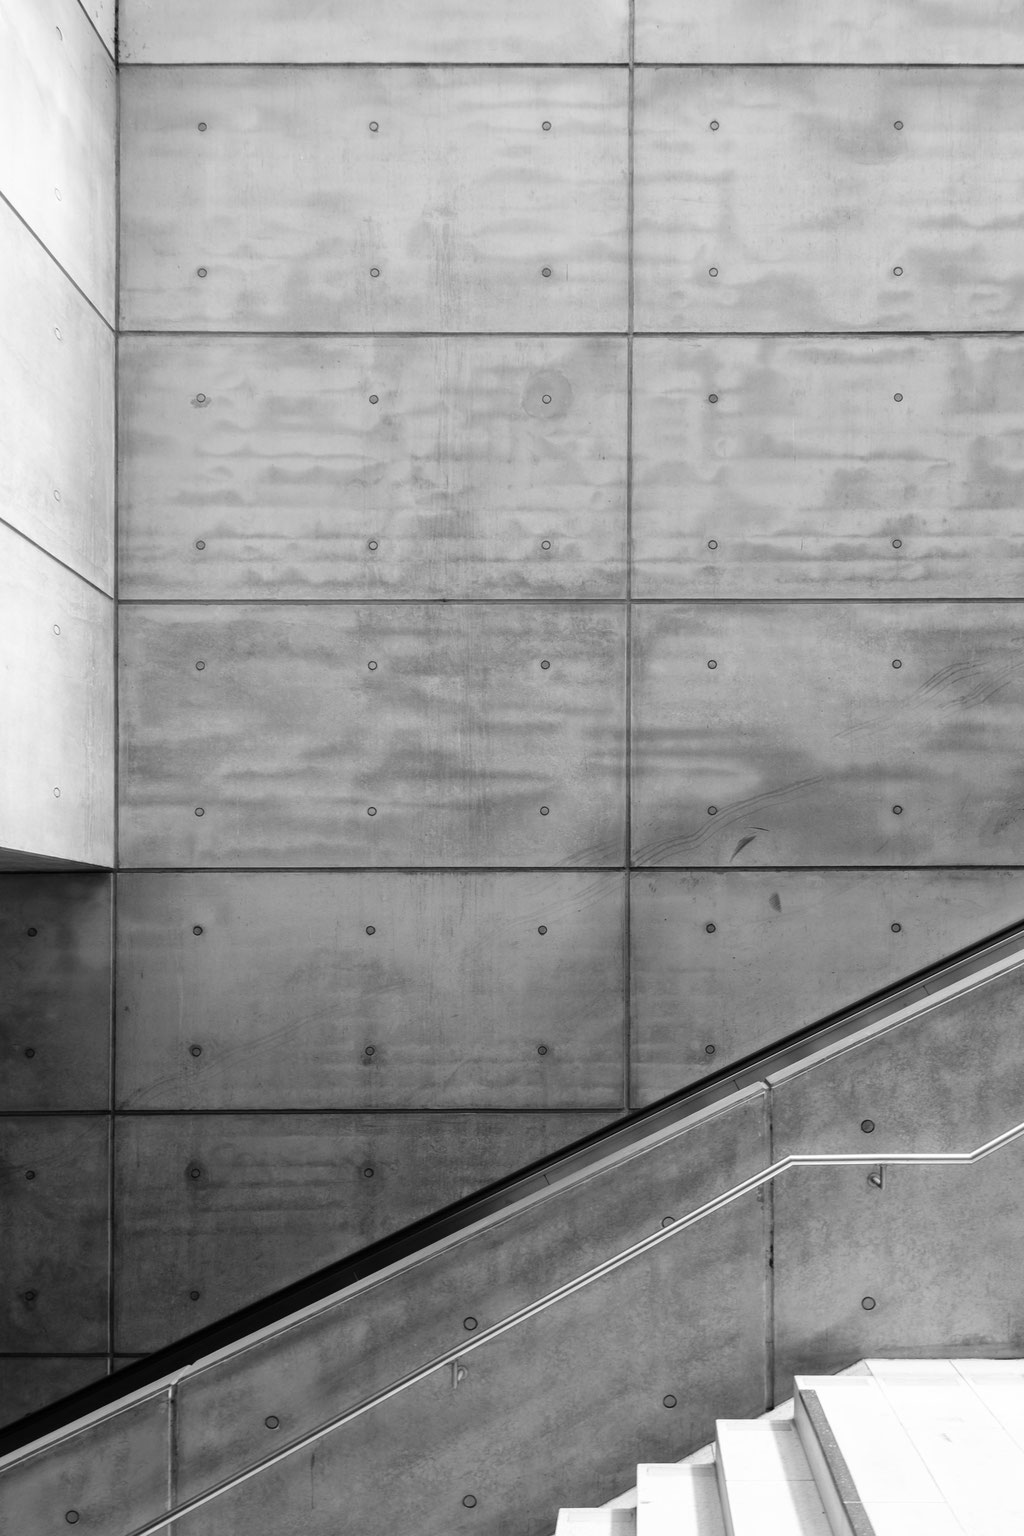 Treppe hinunter, minimalistische Architektur in schwarz weiß.